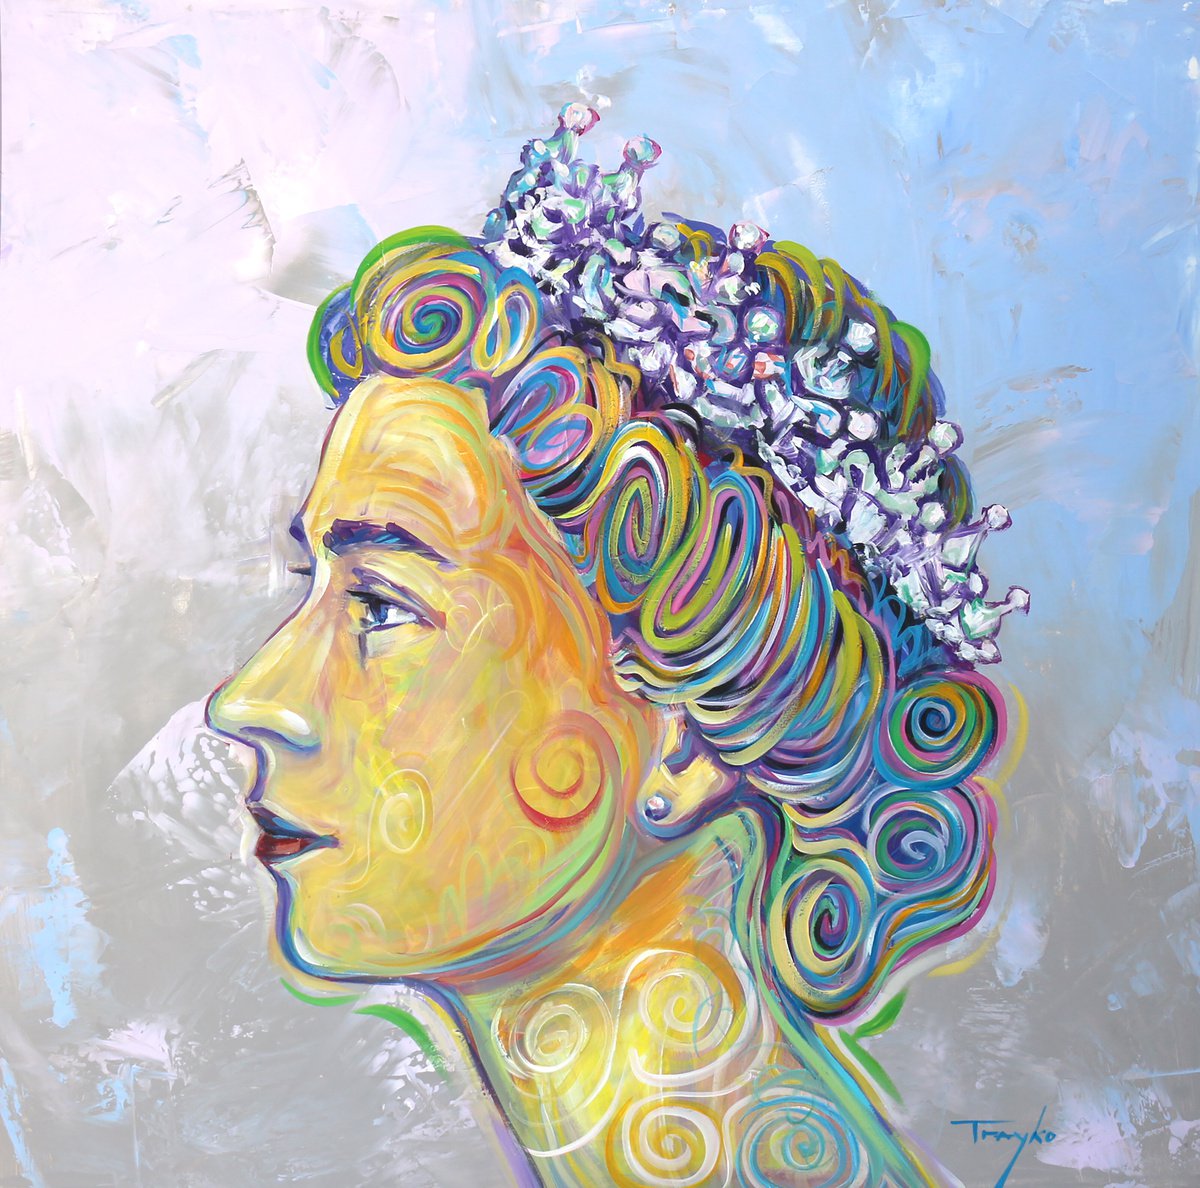 Queen | Queen Elizabeth | British by Trayko Popov